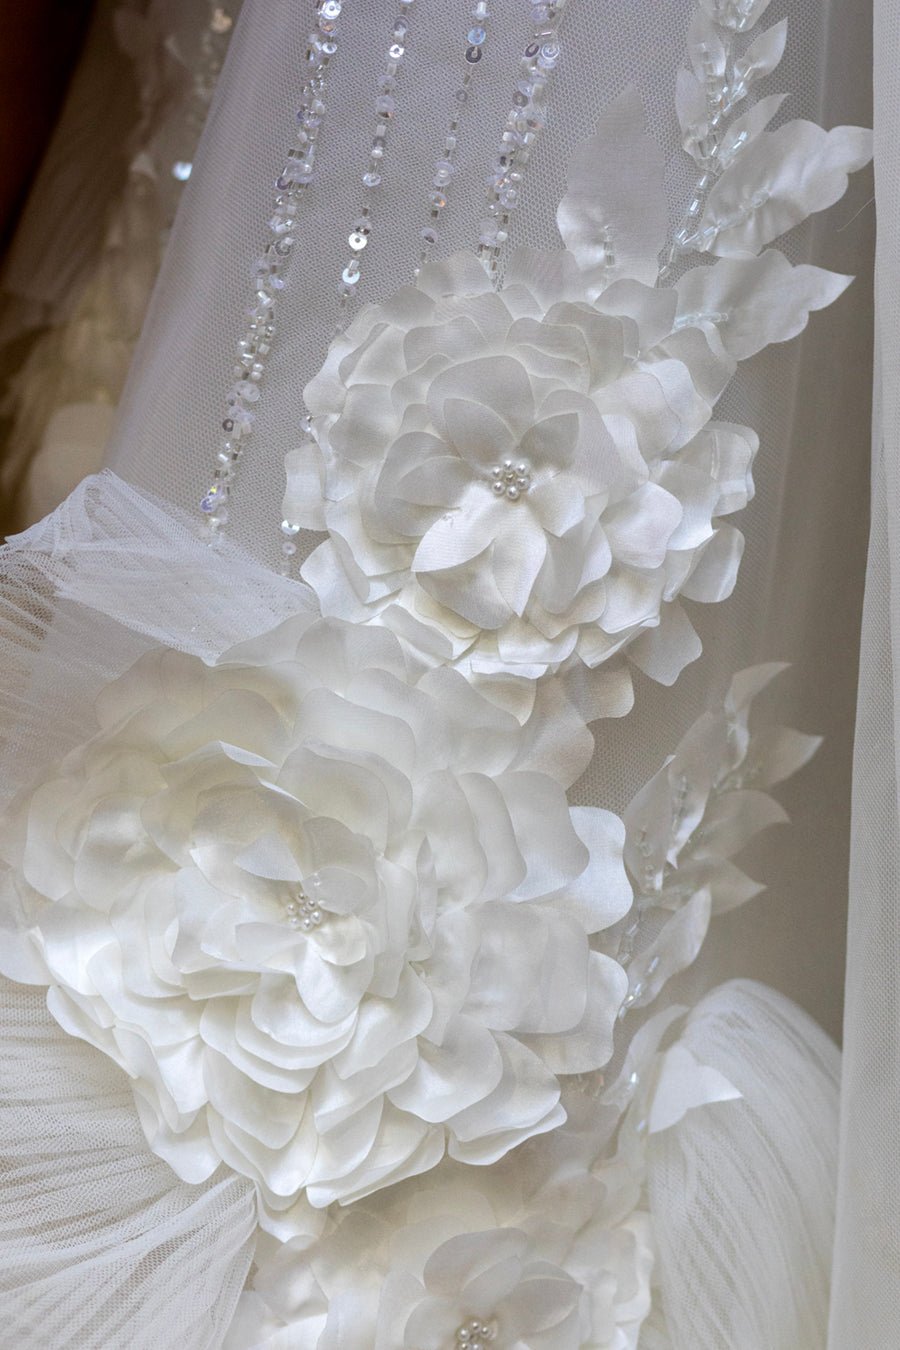 Mystique - Wedding Dress - Pallas Couture